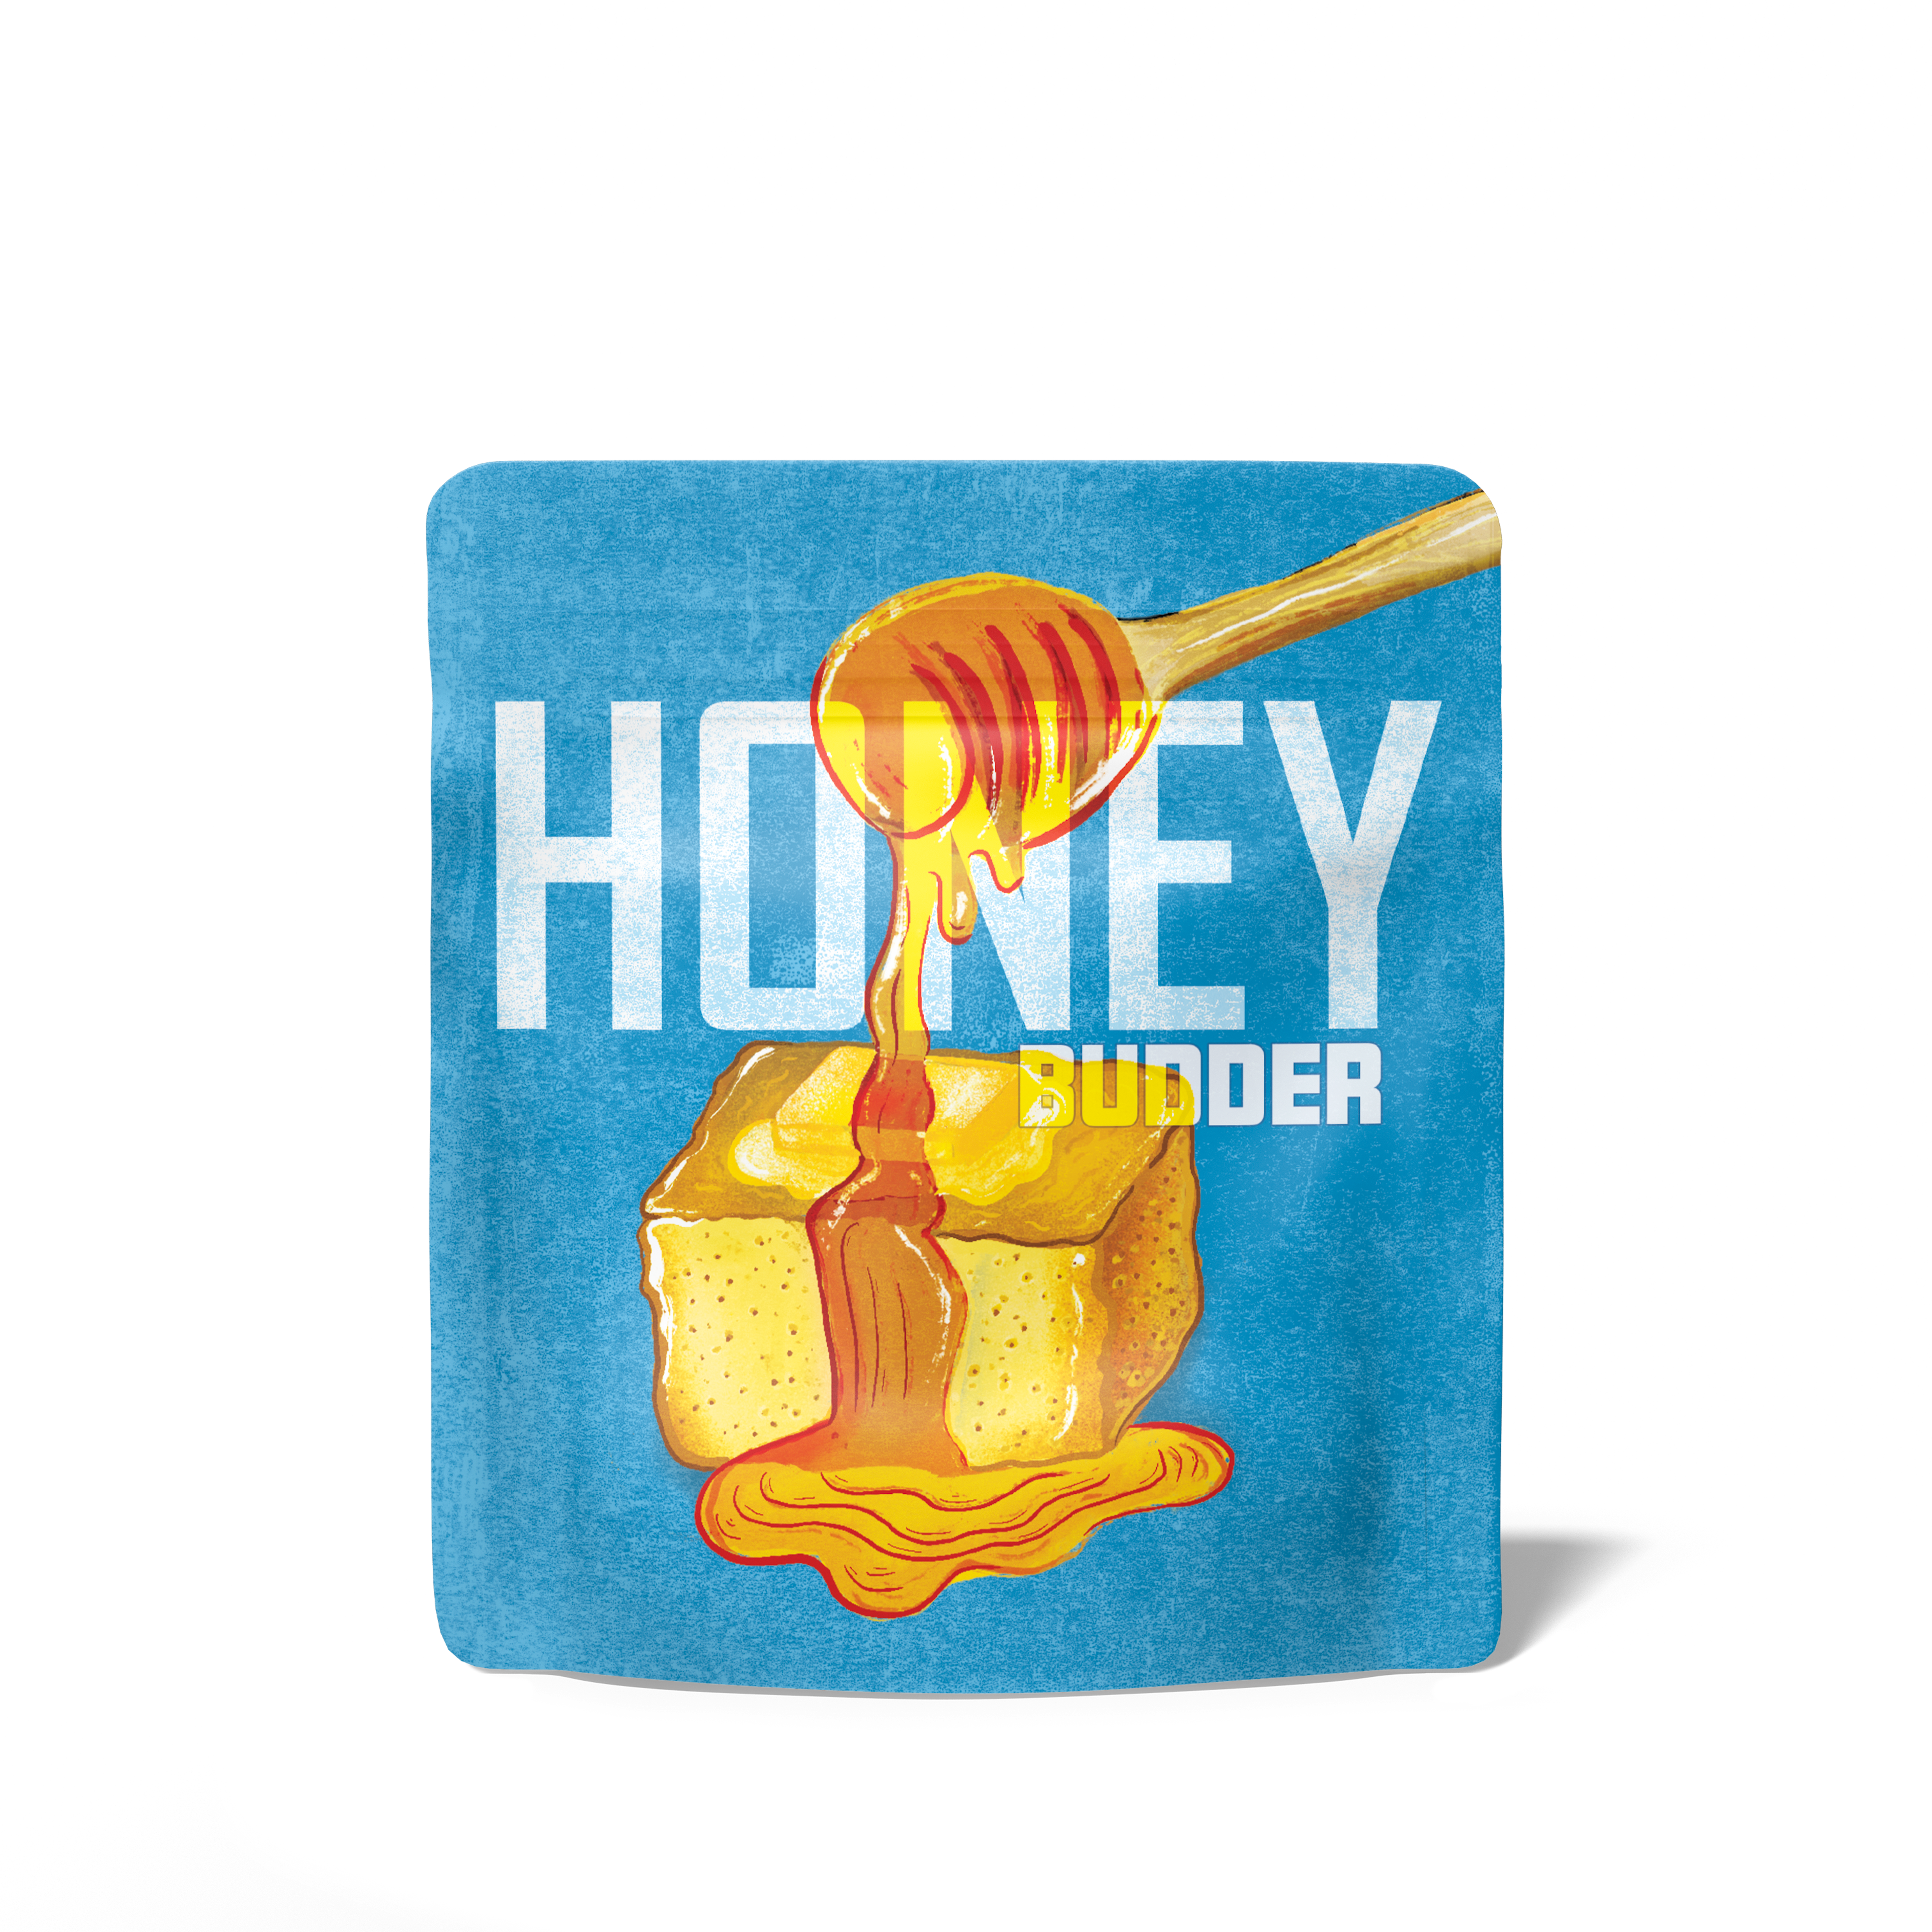 (Deactivated) - Cookies - Honey Budder - THC - Flower - Bud - 3.5g - CA